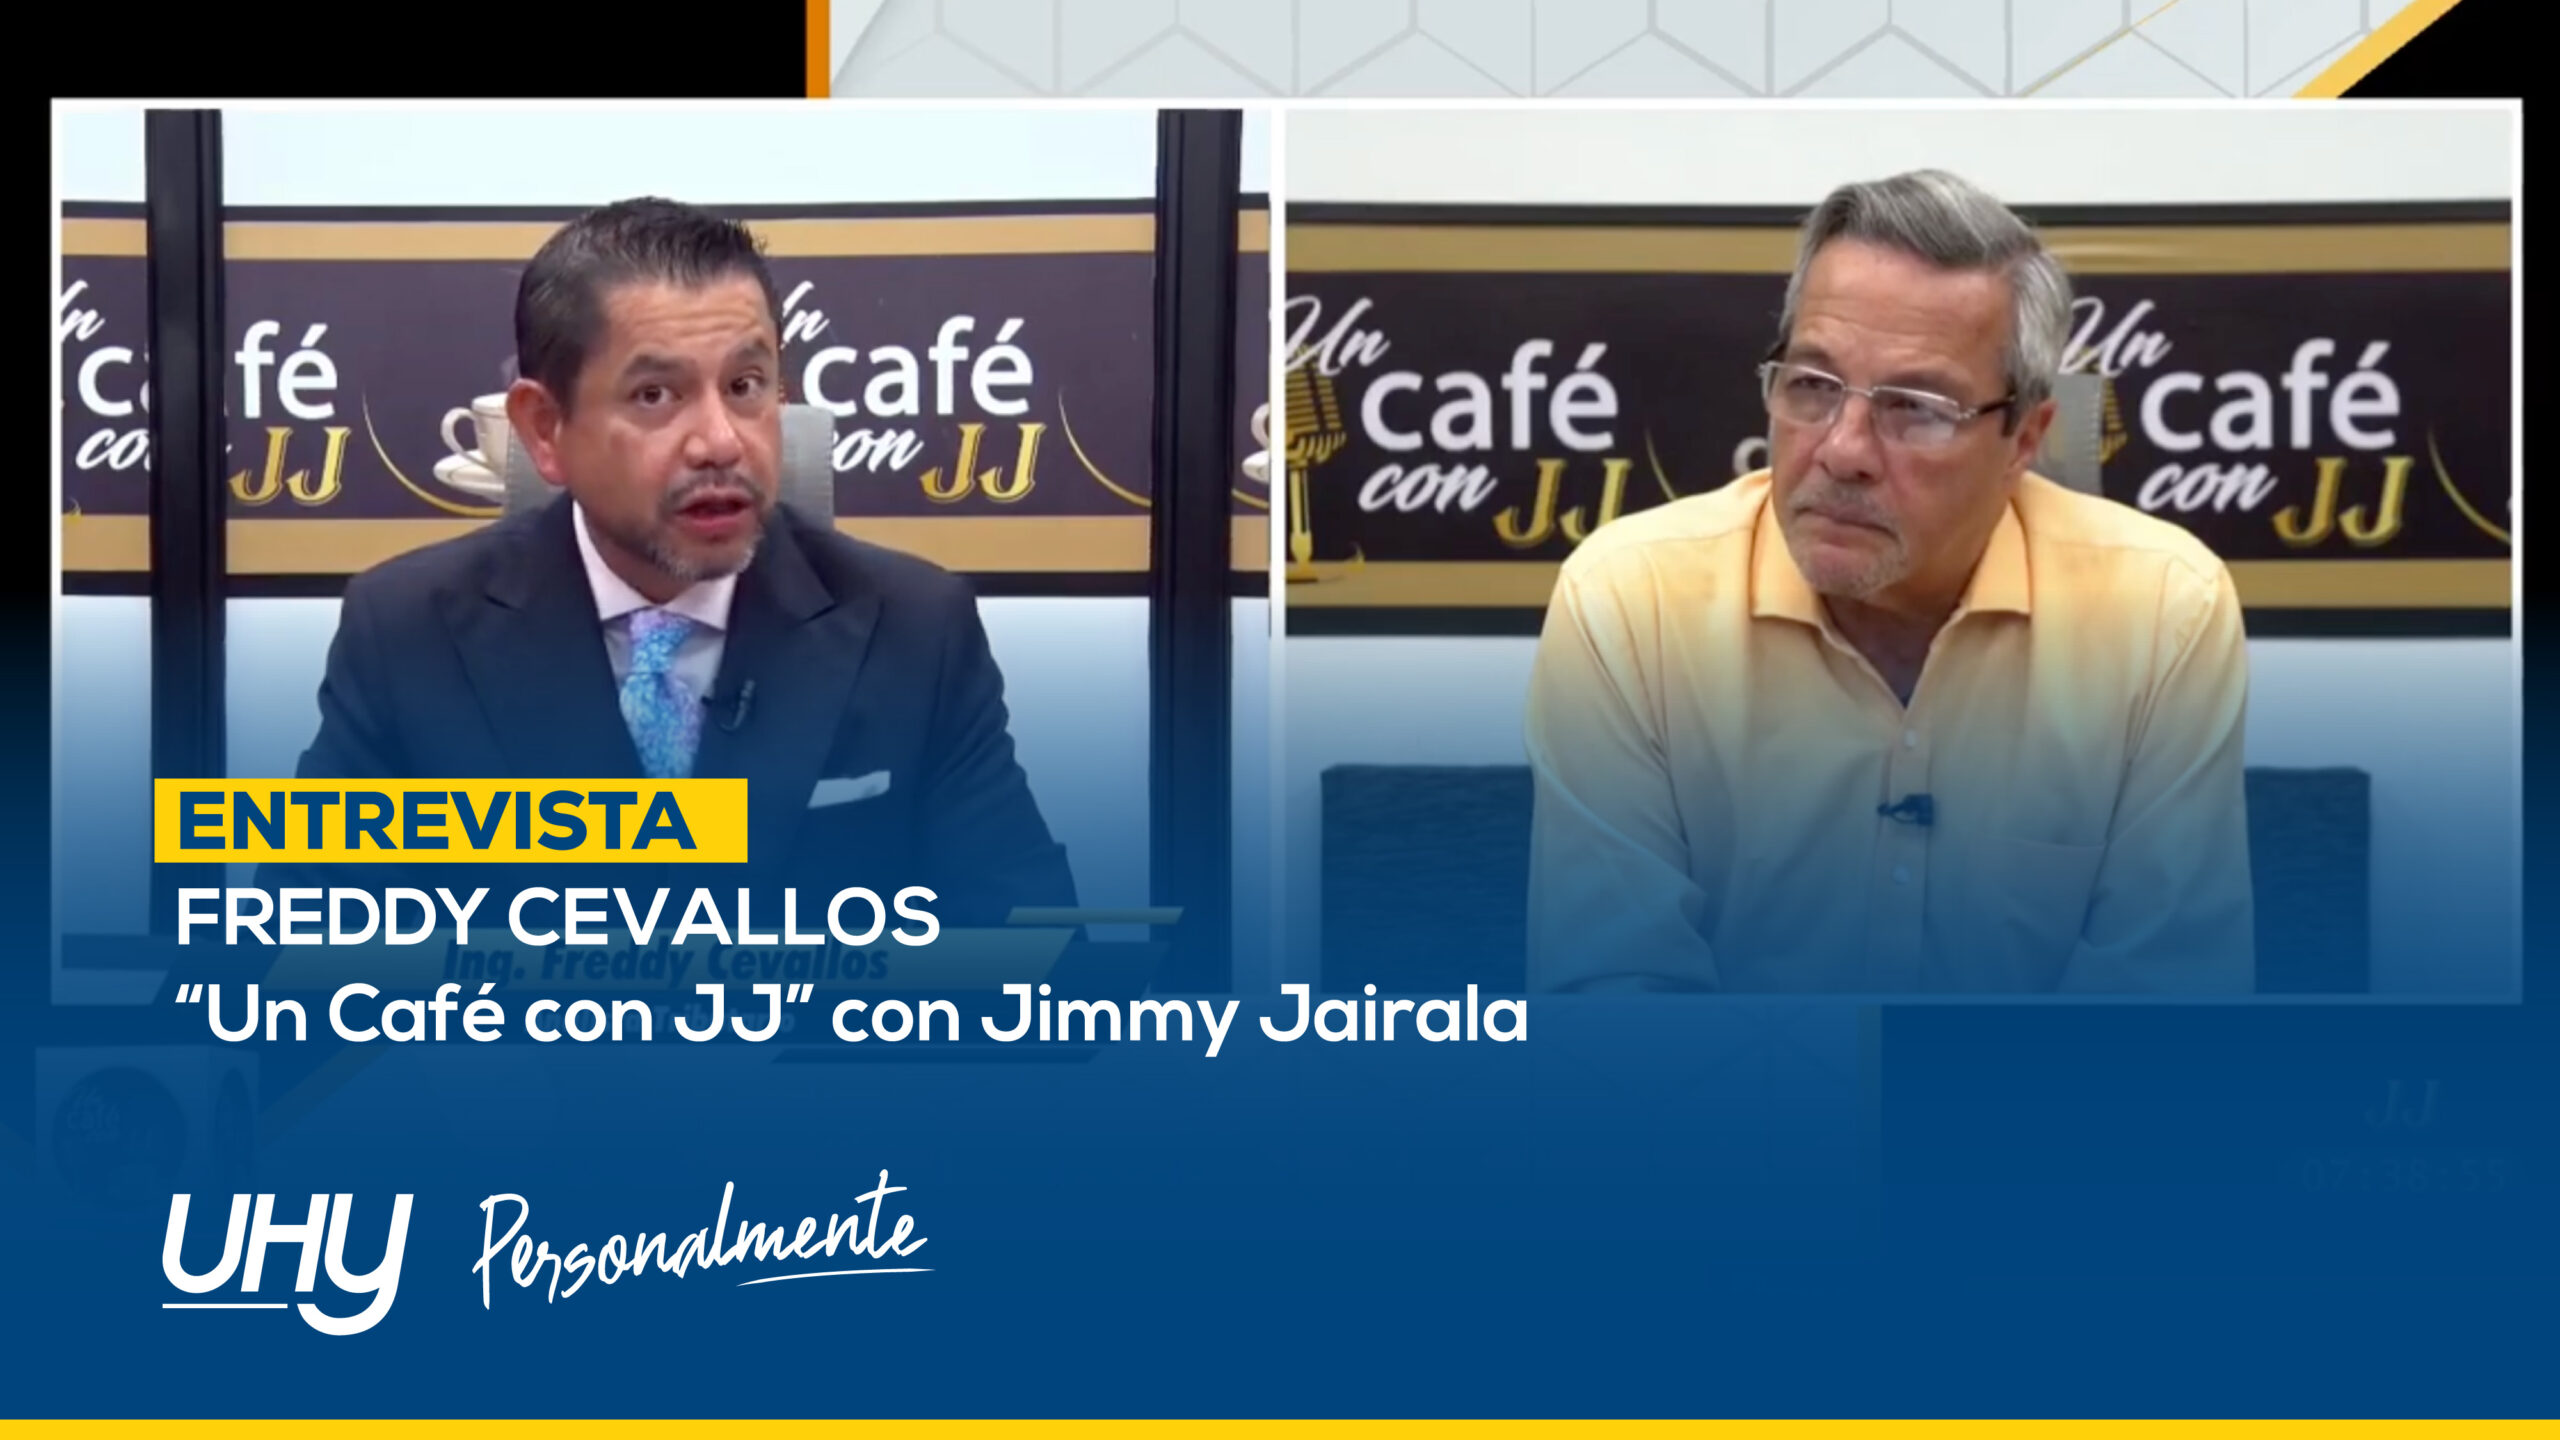 Entrevista Freddy Cevallos con Jimmy Jairala